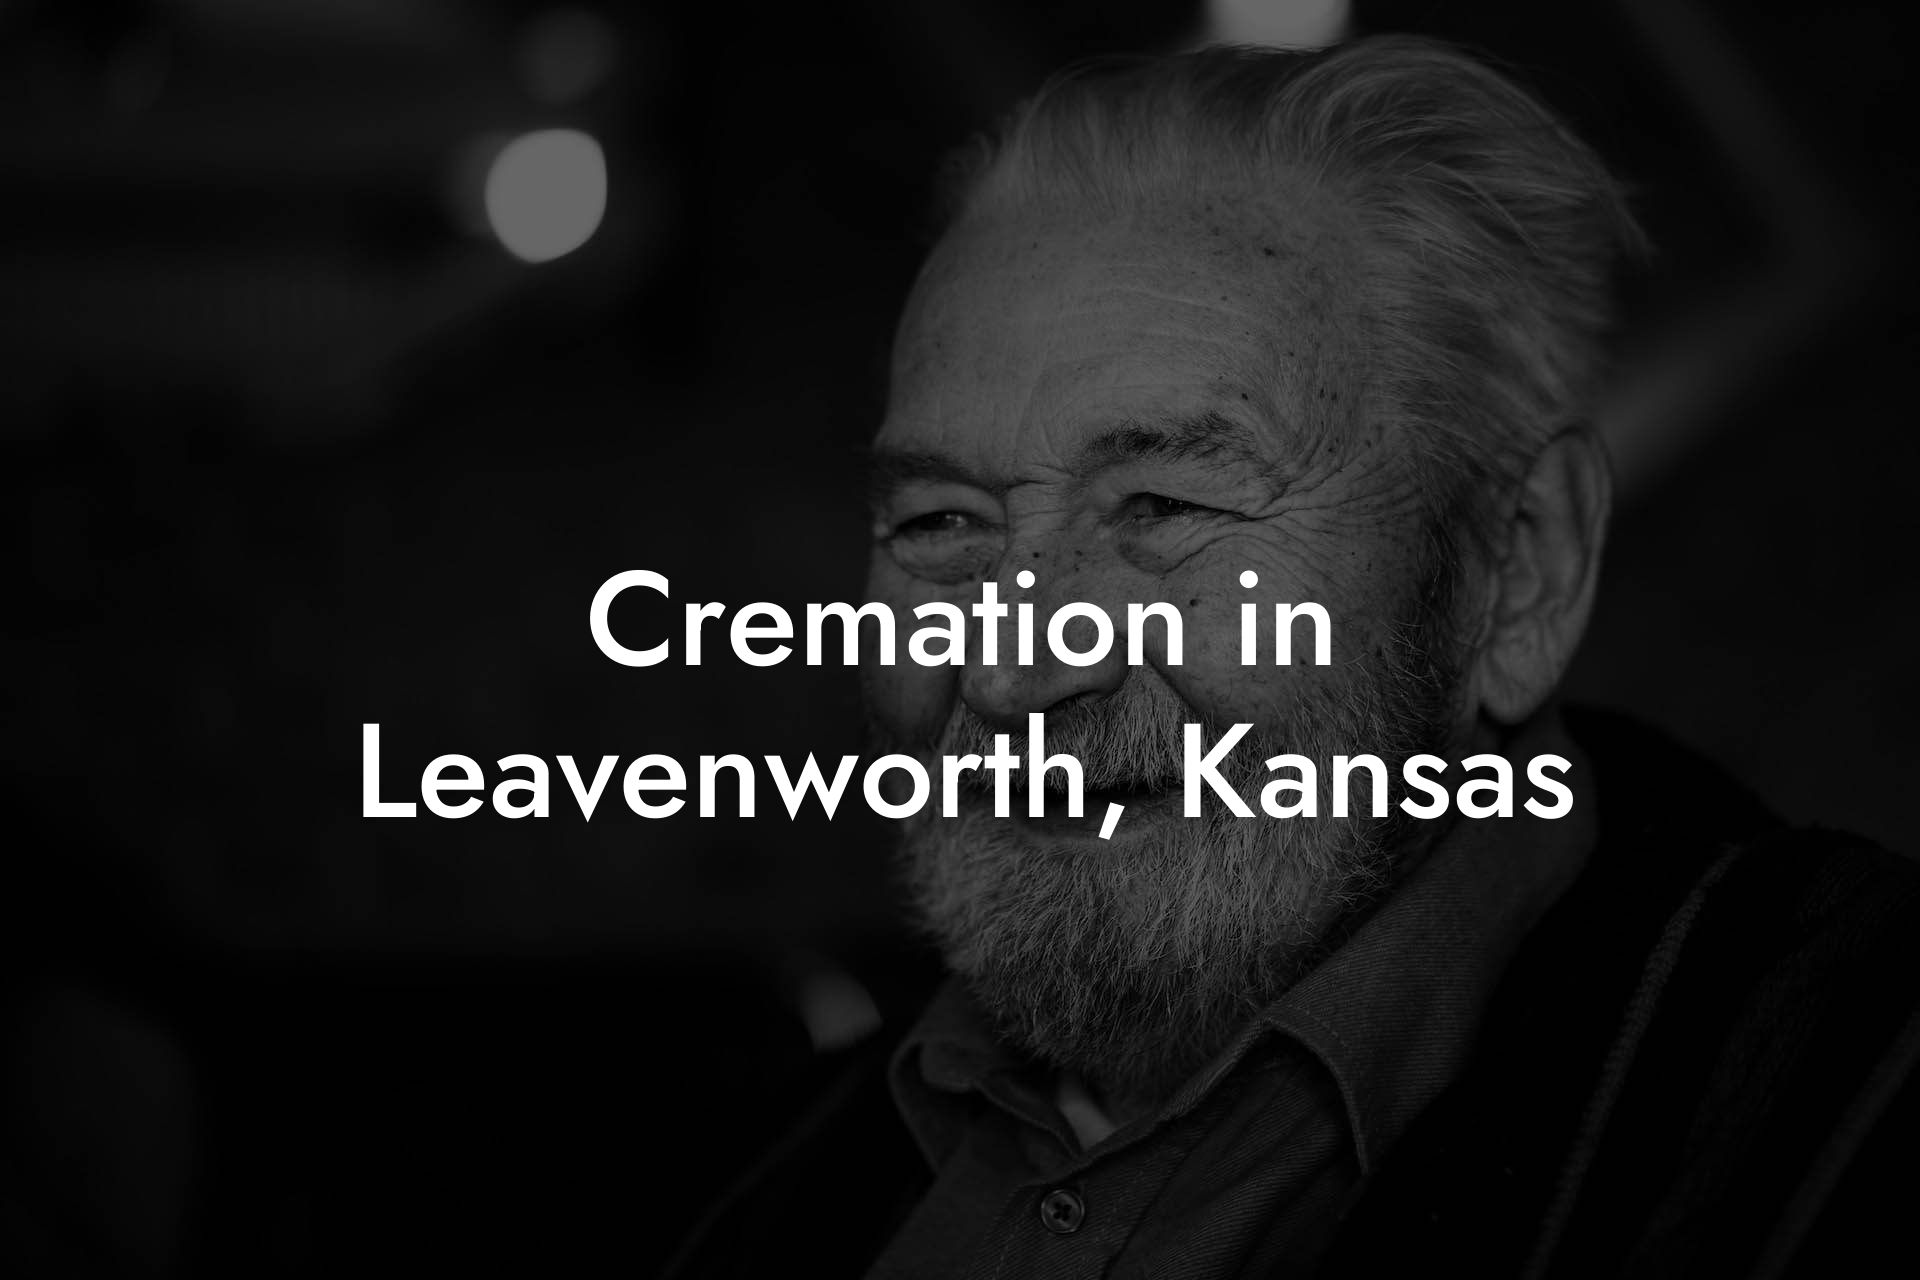 Cremation in Leavenworth, Kansas